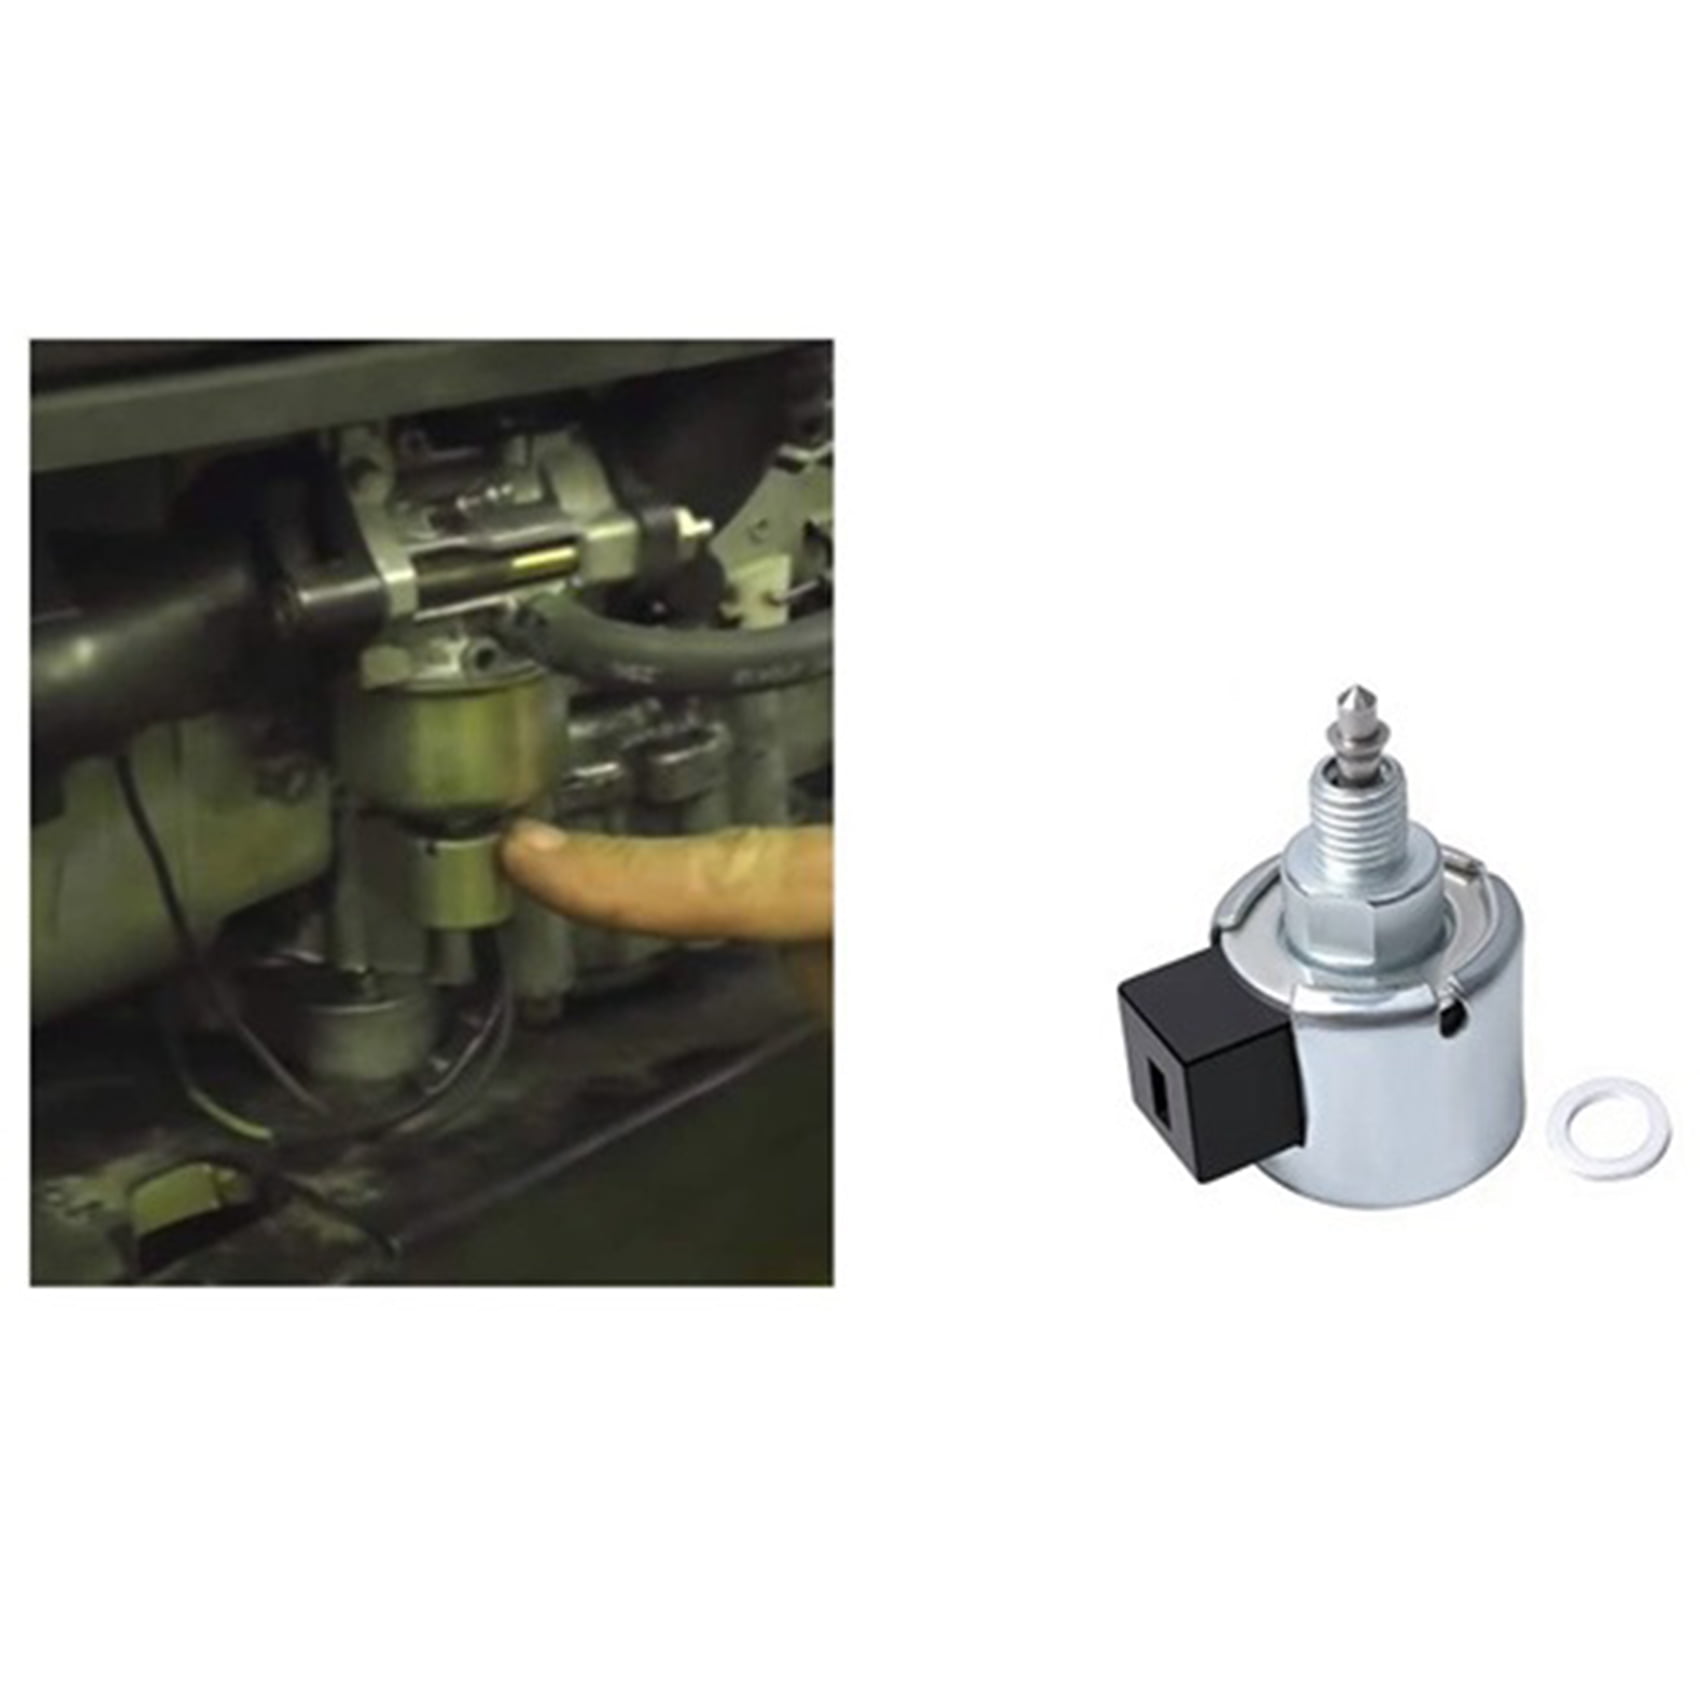 Fuel Shut-Off Solenoid For Briggs Stratton Lawn Garden Equipment Engine 846639